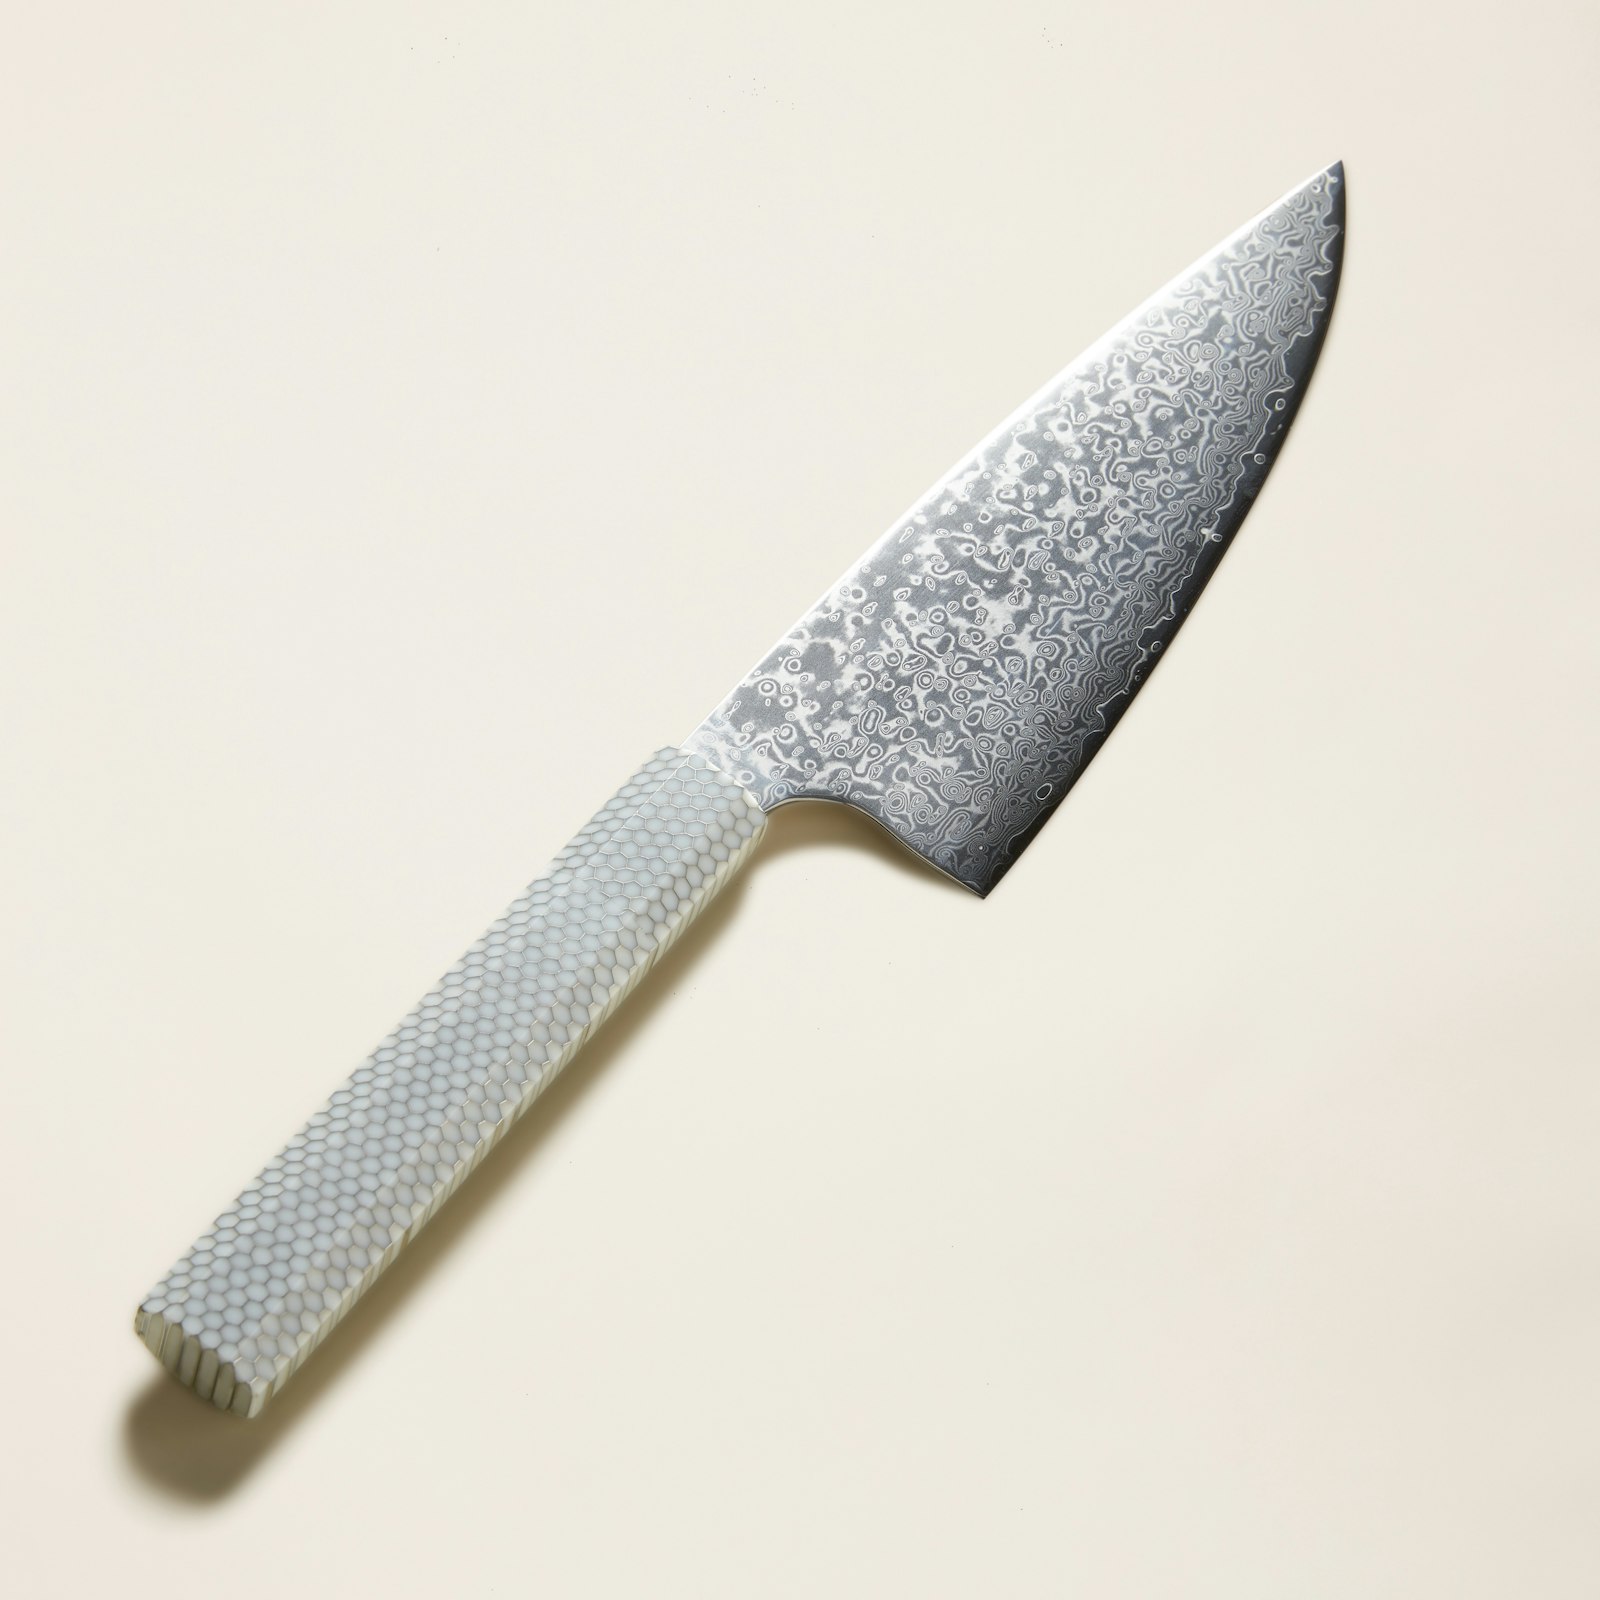 Nobu VG10 Gyuto Chef Knife